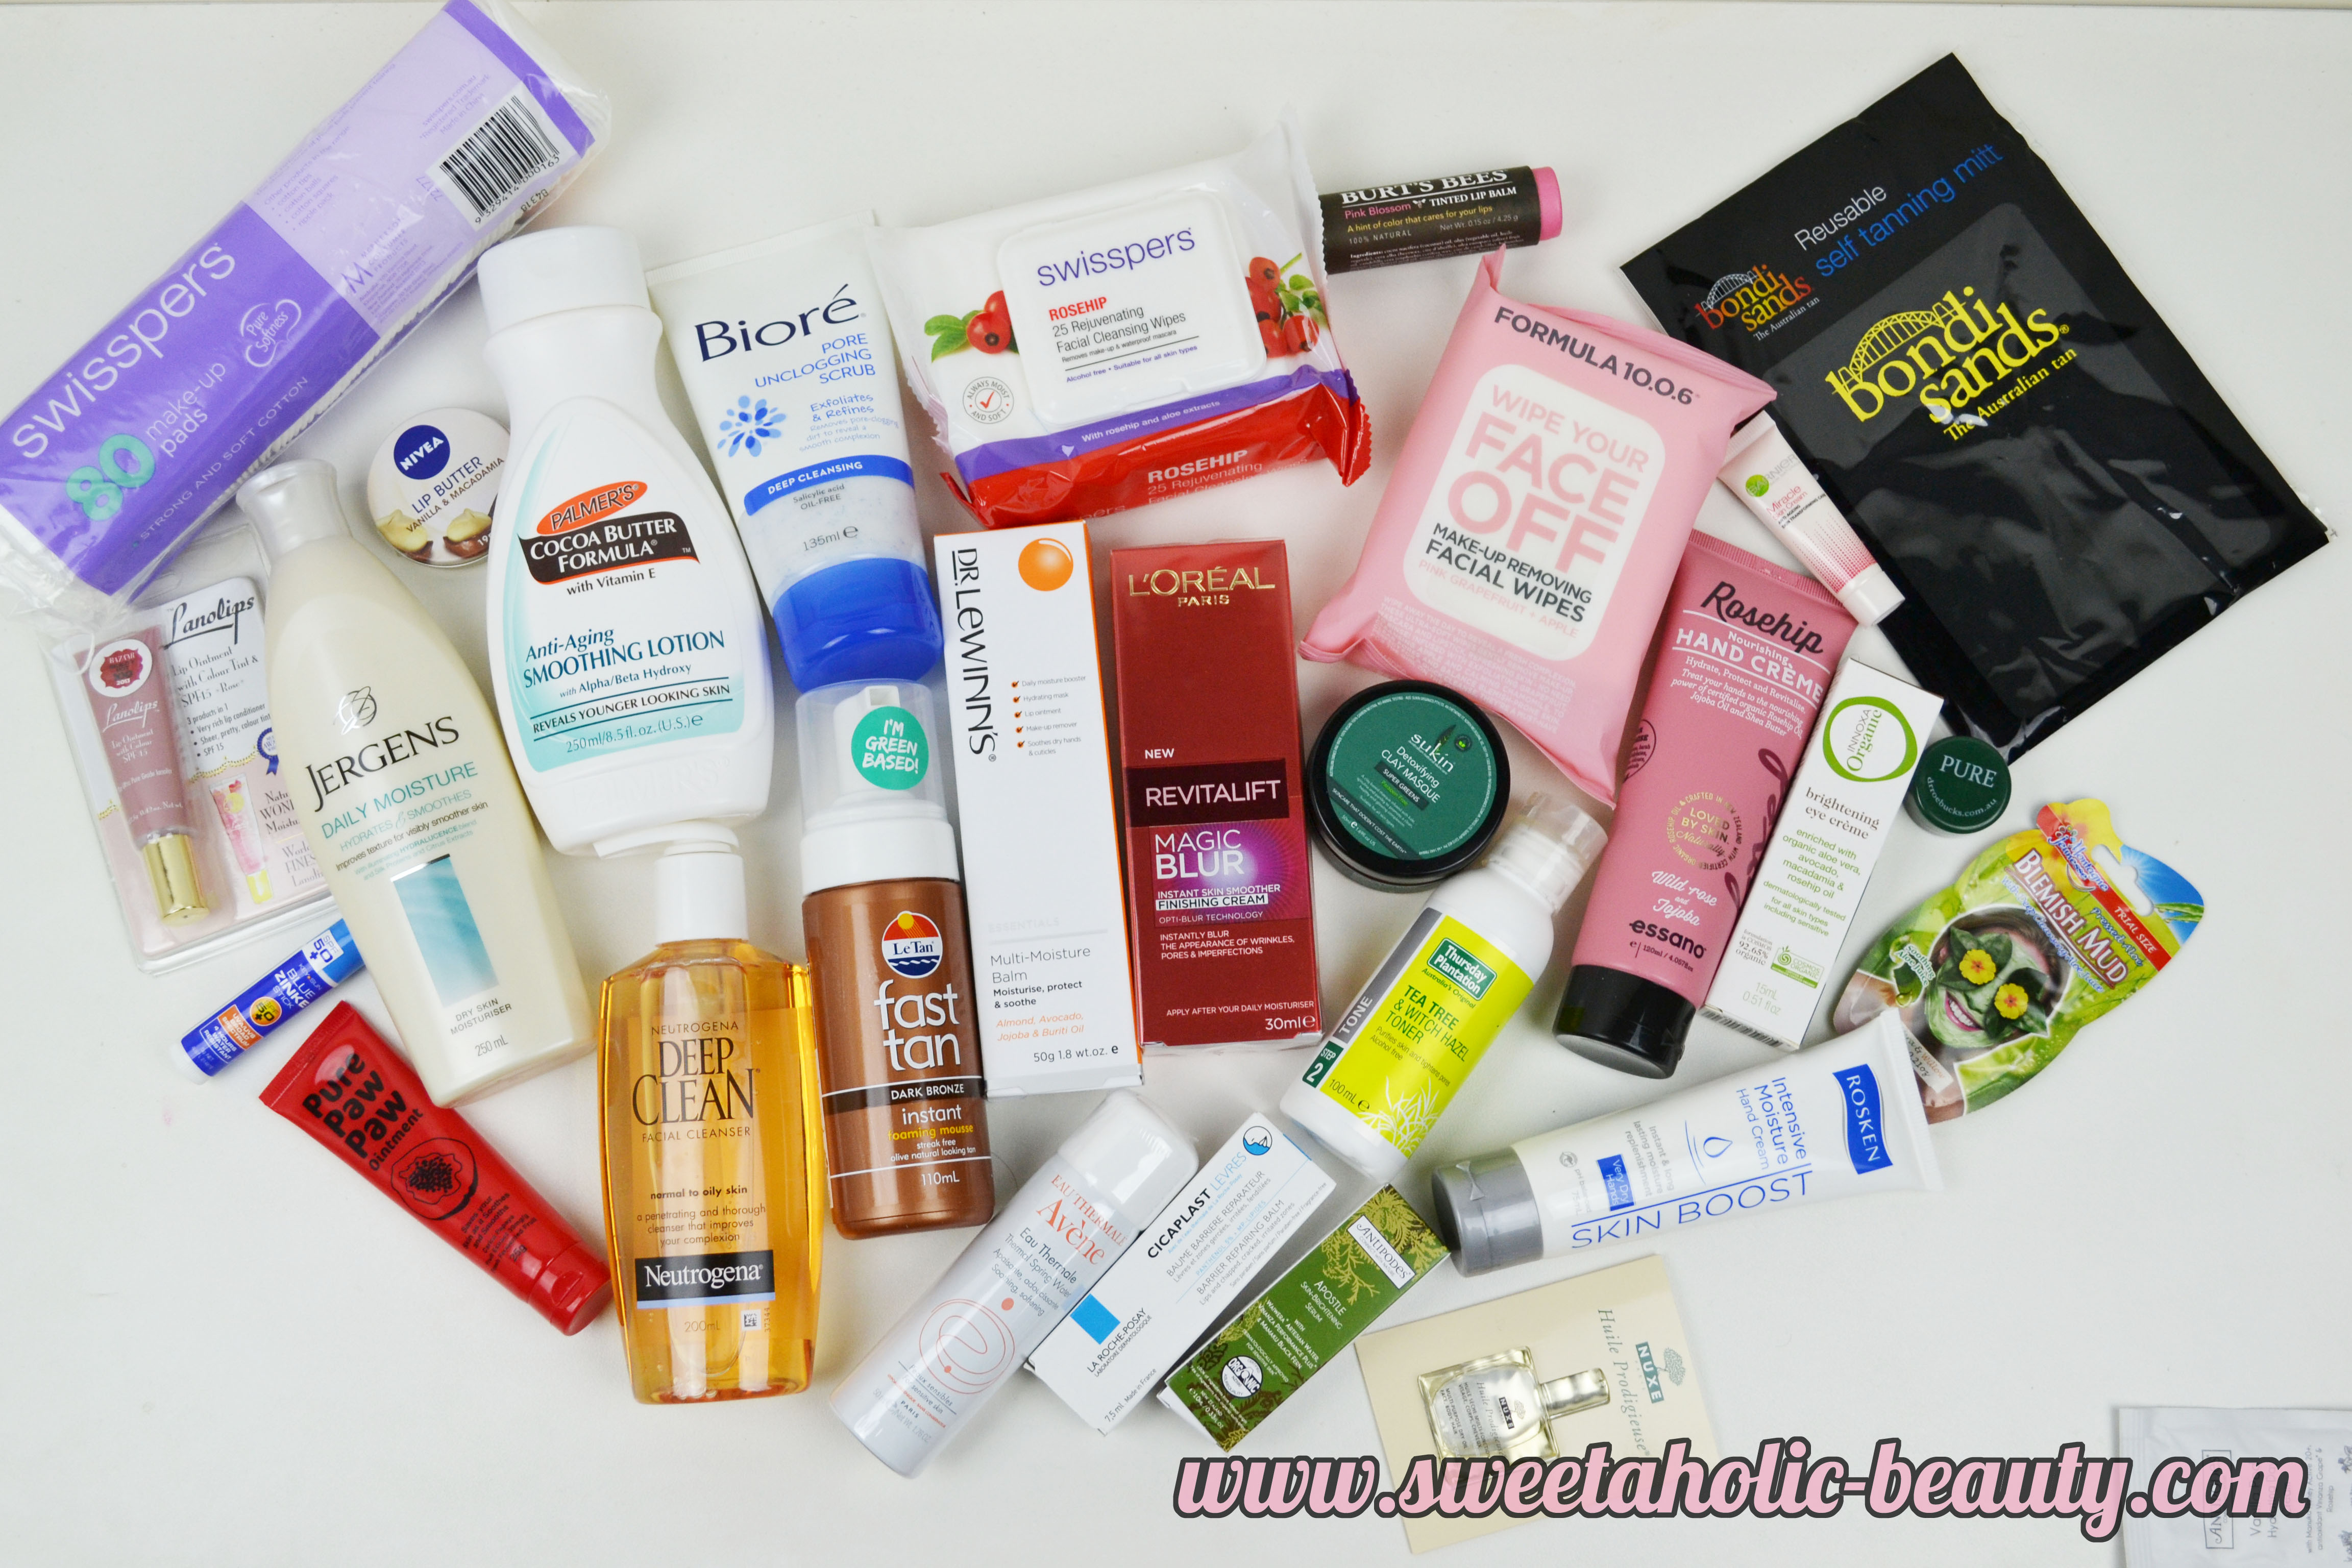 Priceline Skincare Bag 2015 - Review 